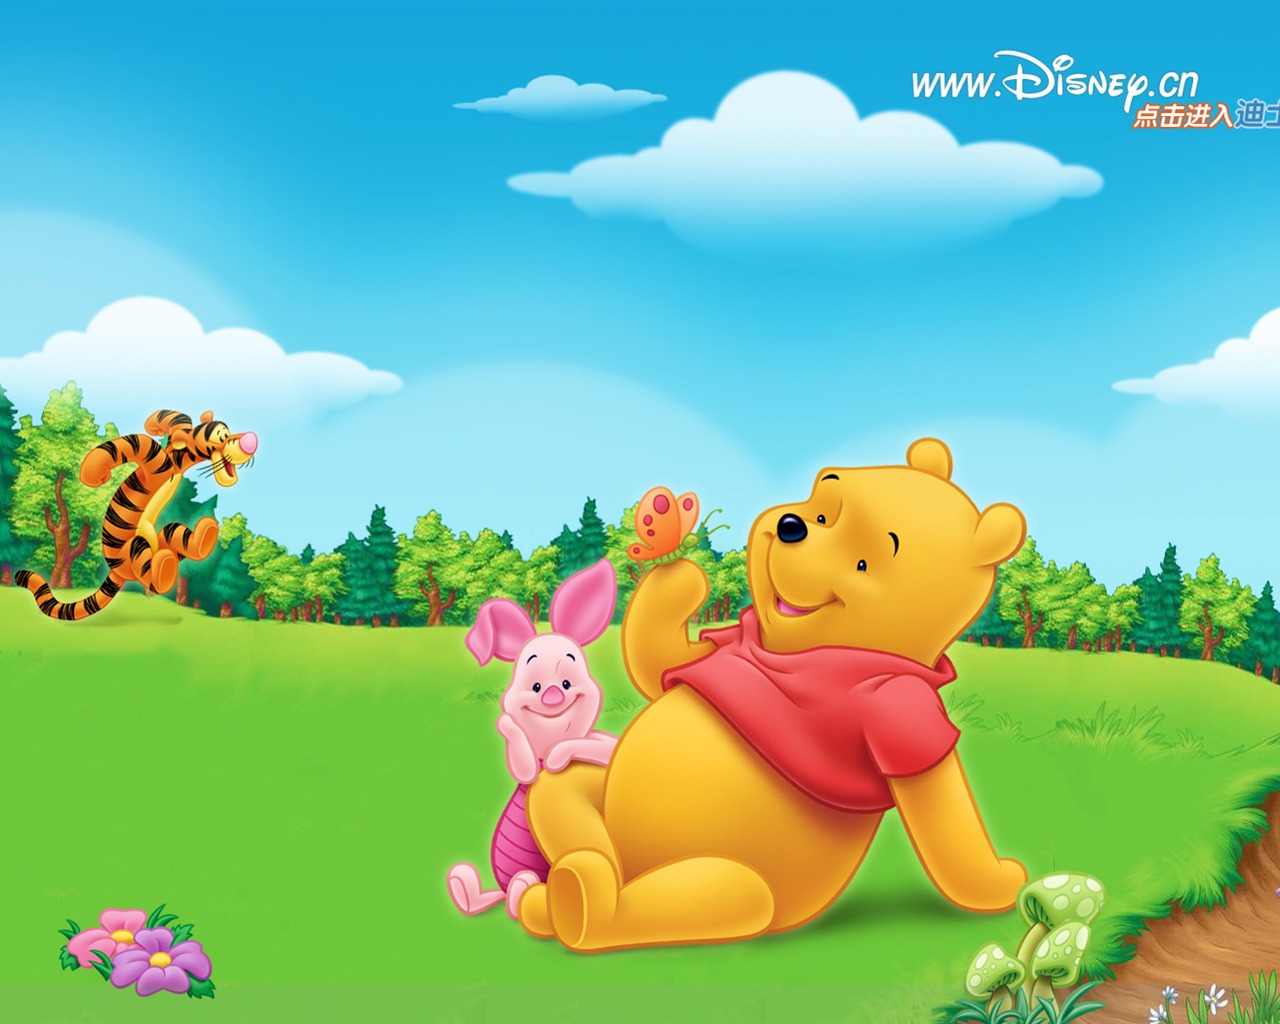 월트 디즈니 만화 곰돌이 푸우 벽지 (1) #1 - 1280x1024